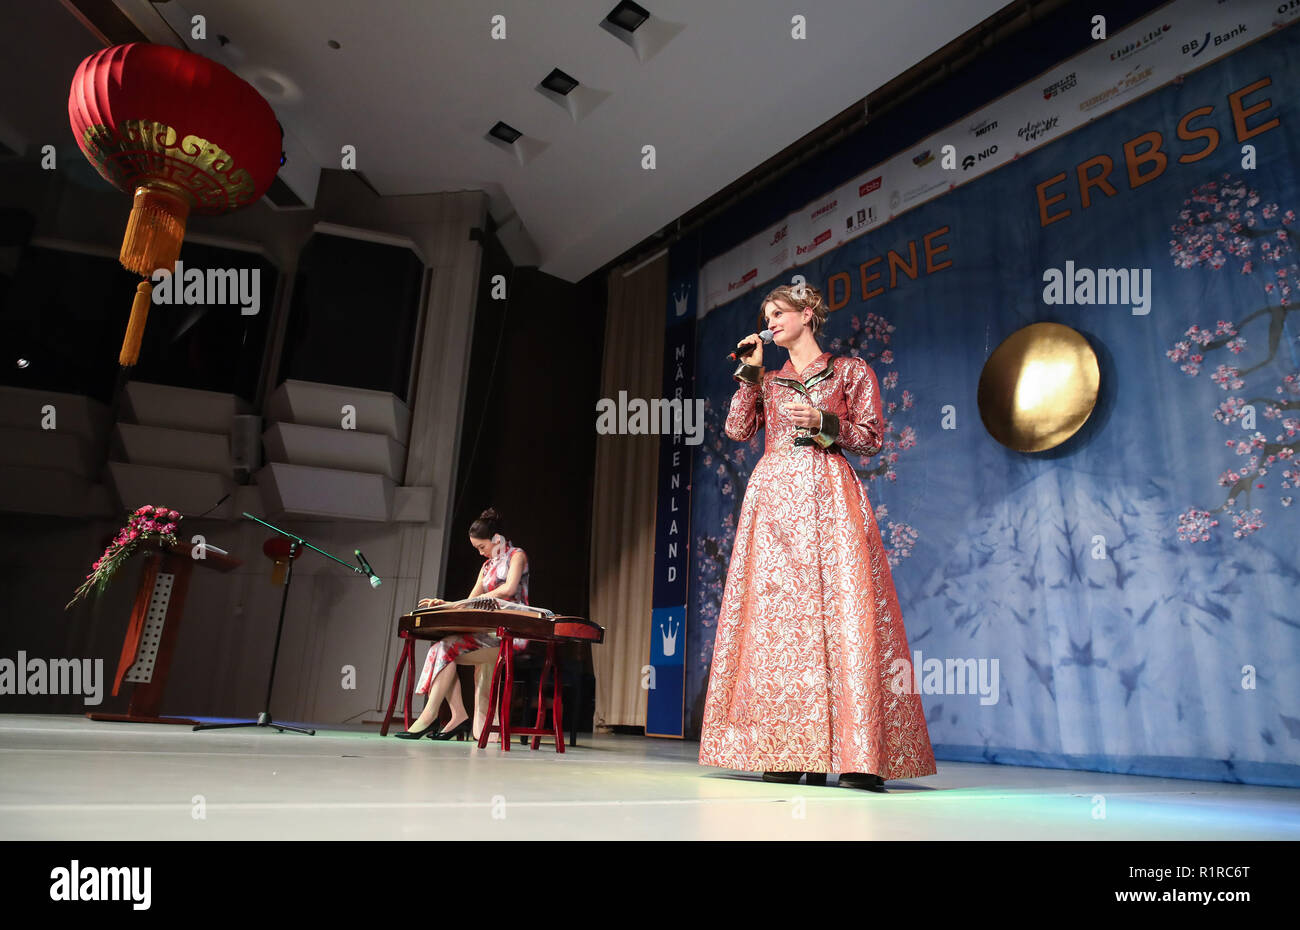 Berlino, Germania. Xiii Nov, 2018. Artisti dare una performance durante il Goldene Erbse cerimonia di premiazione presso l'ambasciata cinese in Germania, a Berlino, la capitale della Germania, nov. 13, 2018. Credito: Shan Yuqi/Xinhua/Alamy Live News Foto Stock